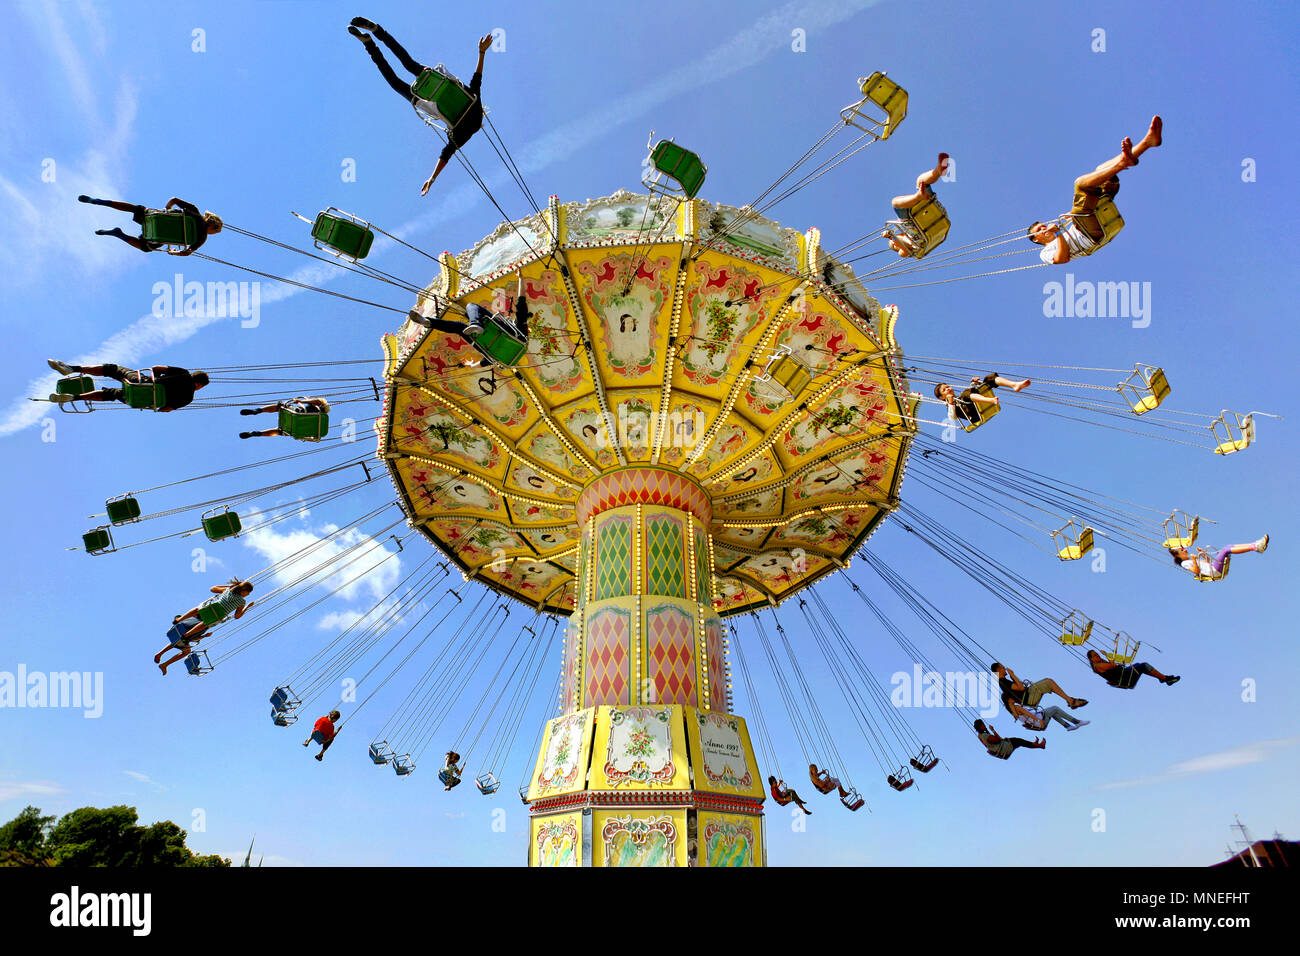 Kättingflygaren Swing Ride, Gröna Lund Amusement Park, Djurgården, Stockholm, Sweden Stock Photo